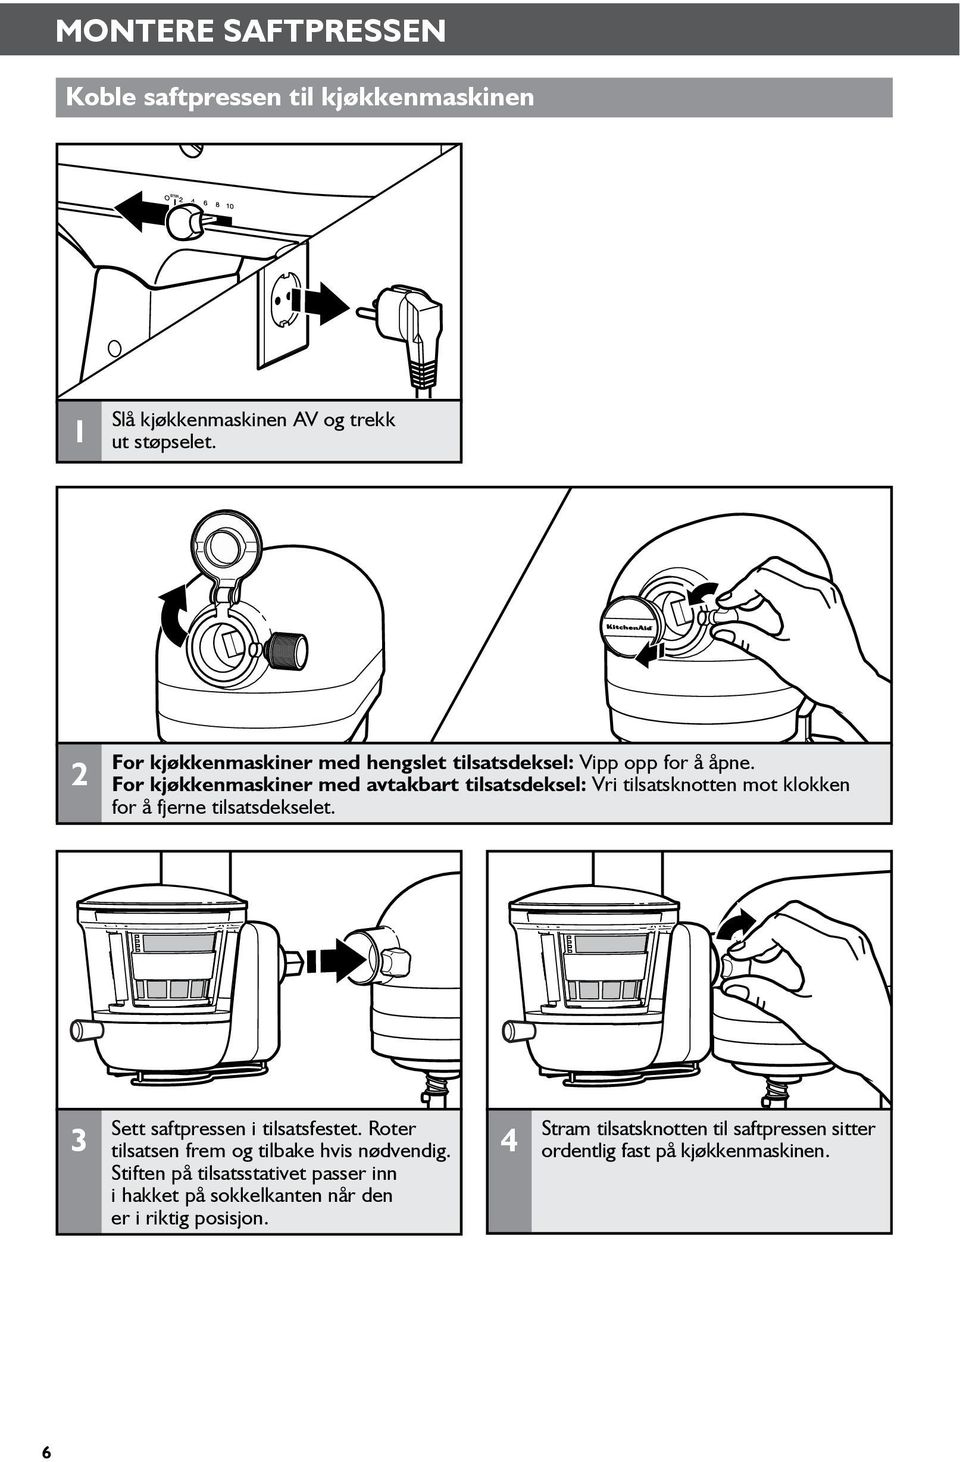 For kjøkkenmaskiner med avtakbart tilsatsdeksel: Vri tilsatsknotten mot klokken for å fjerne tilsatsdekselet.